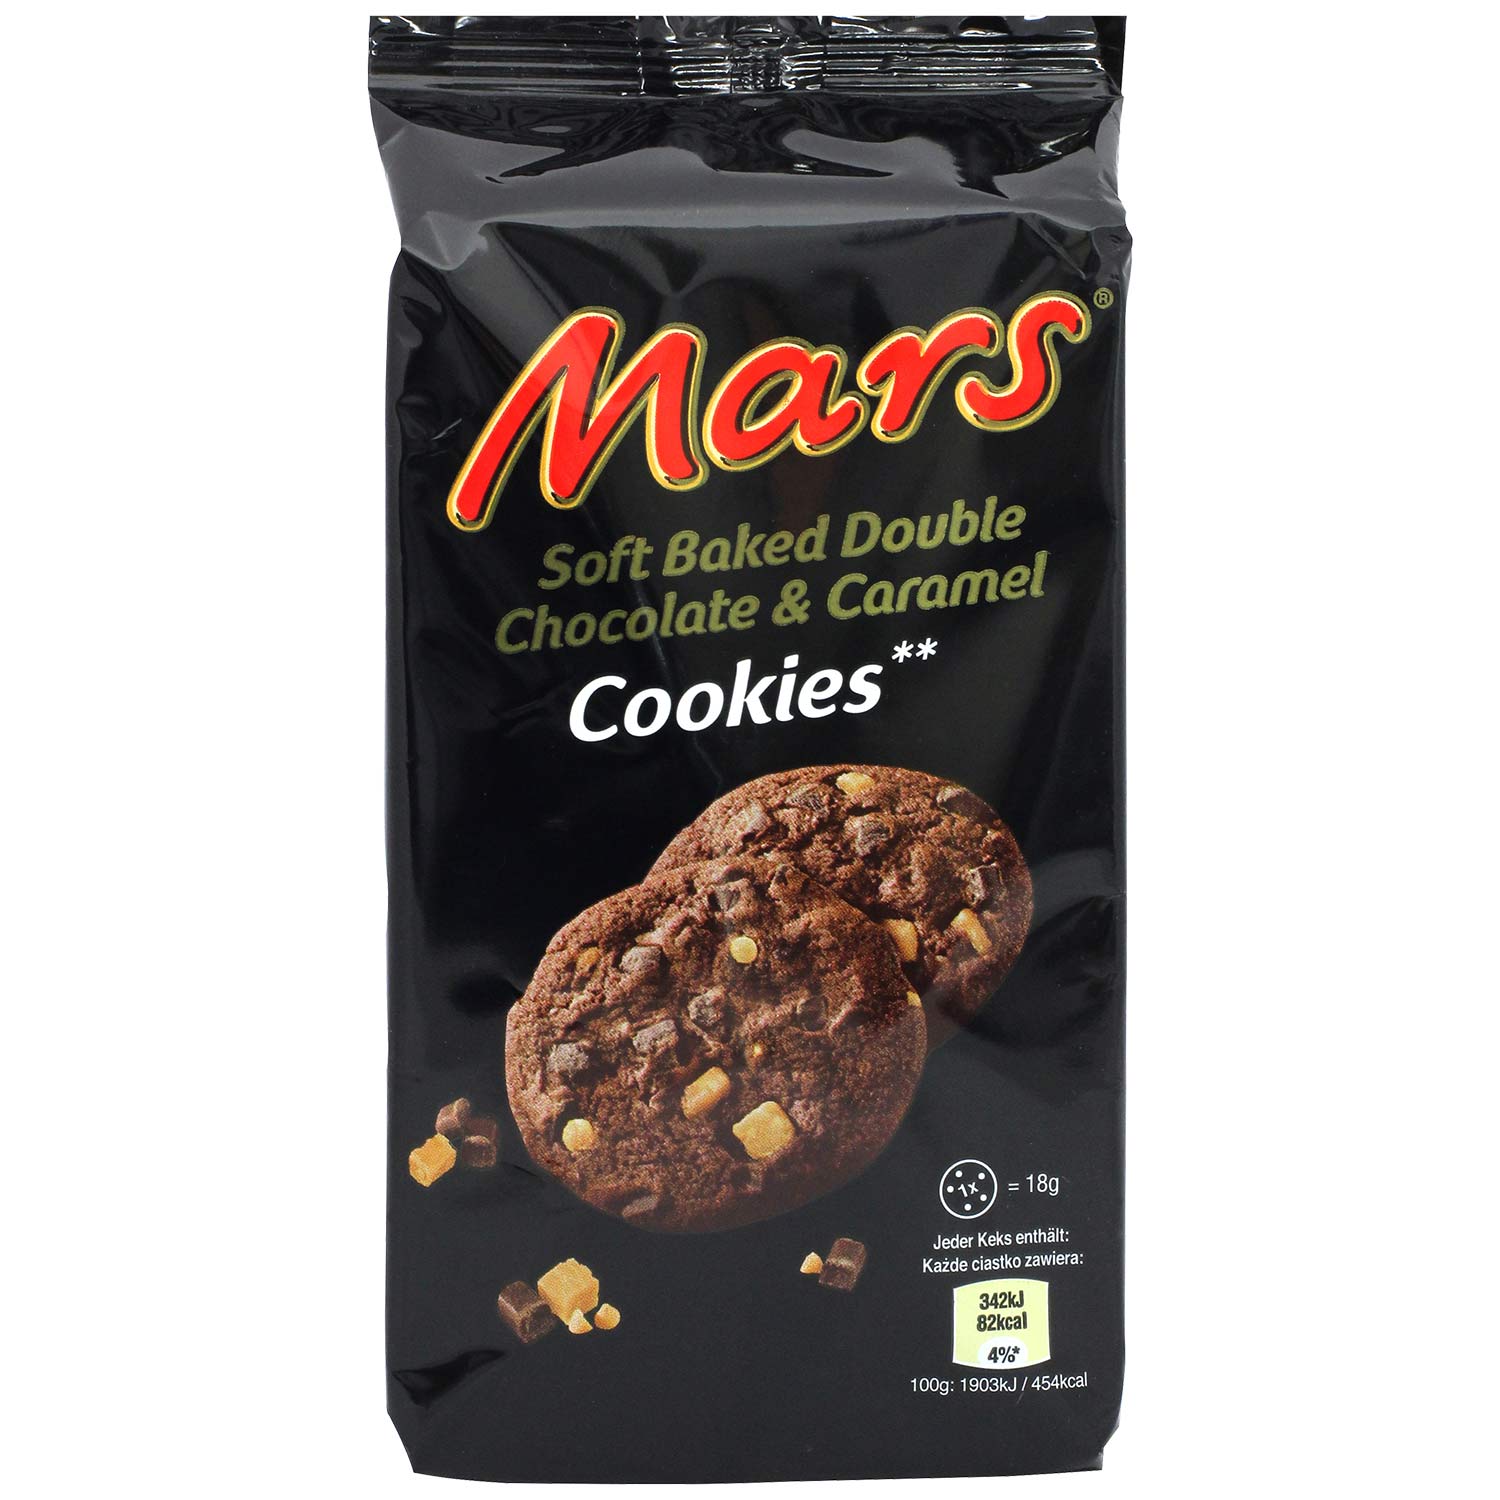 Mars Cookies